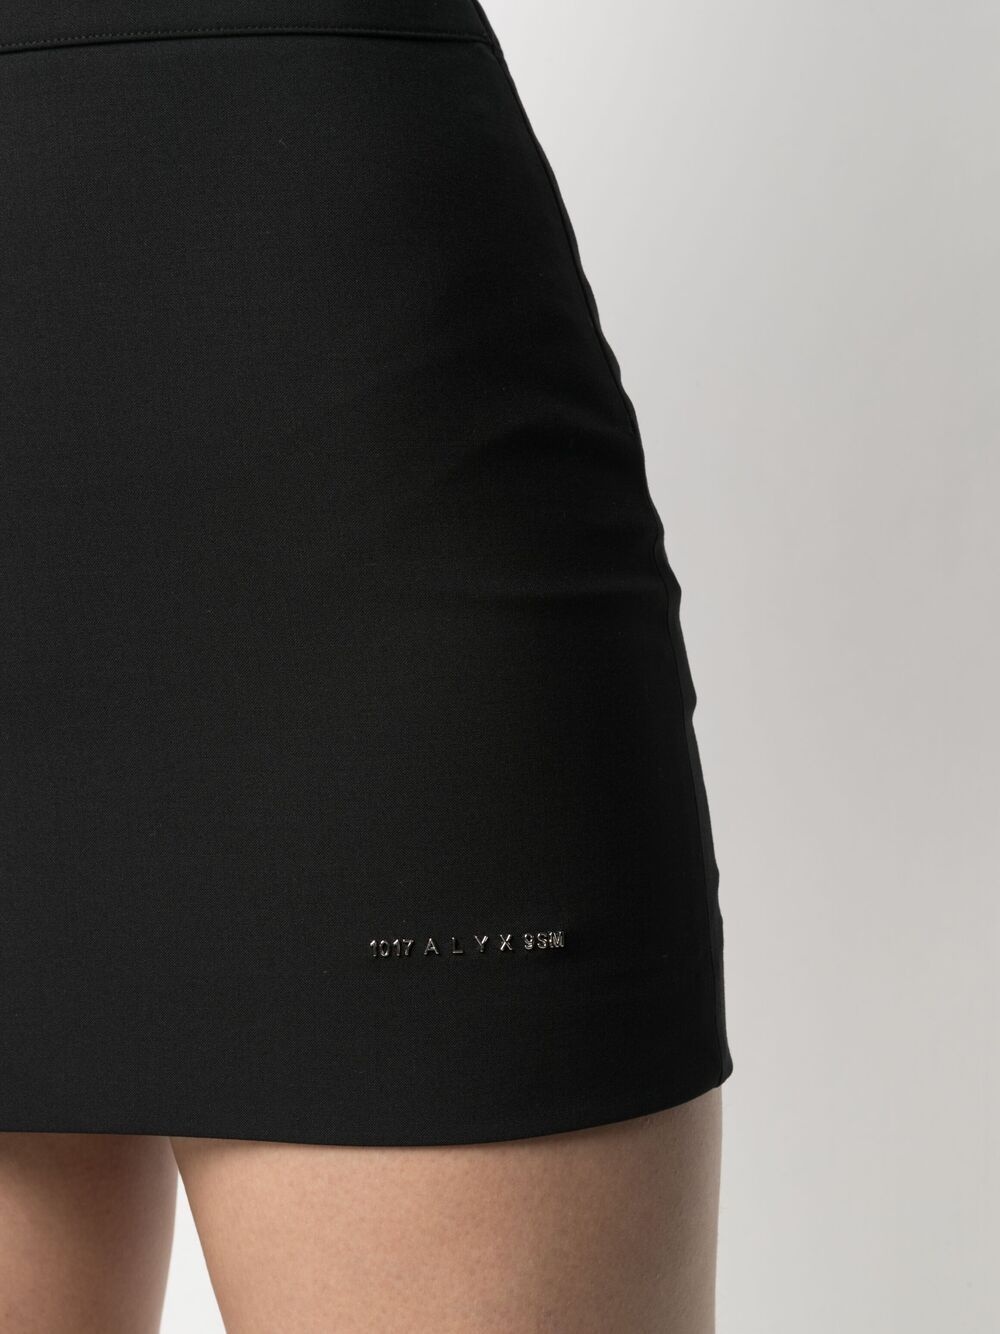 bodycon mini skirt - 5